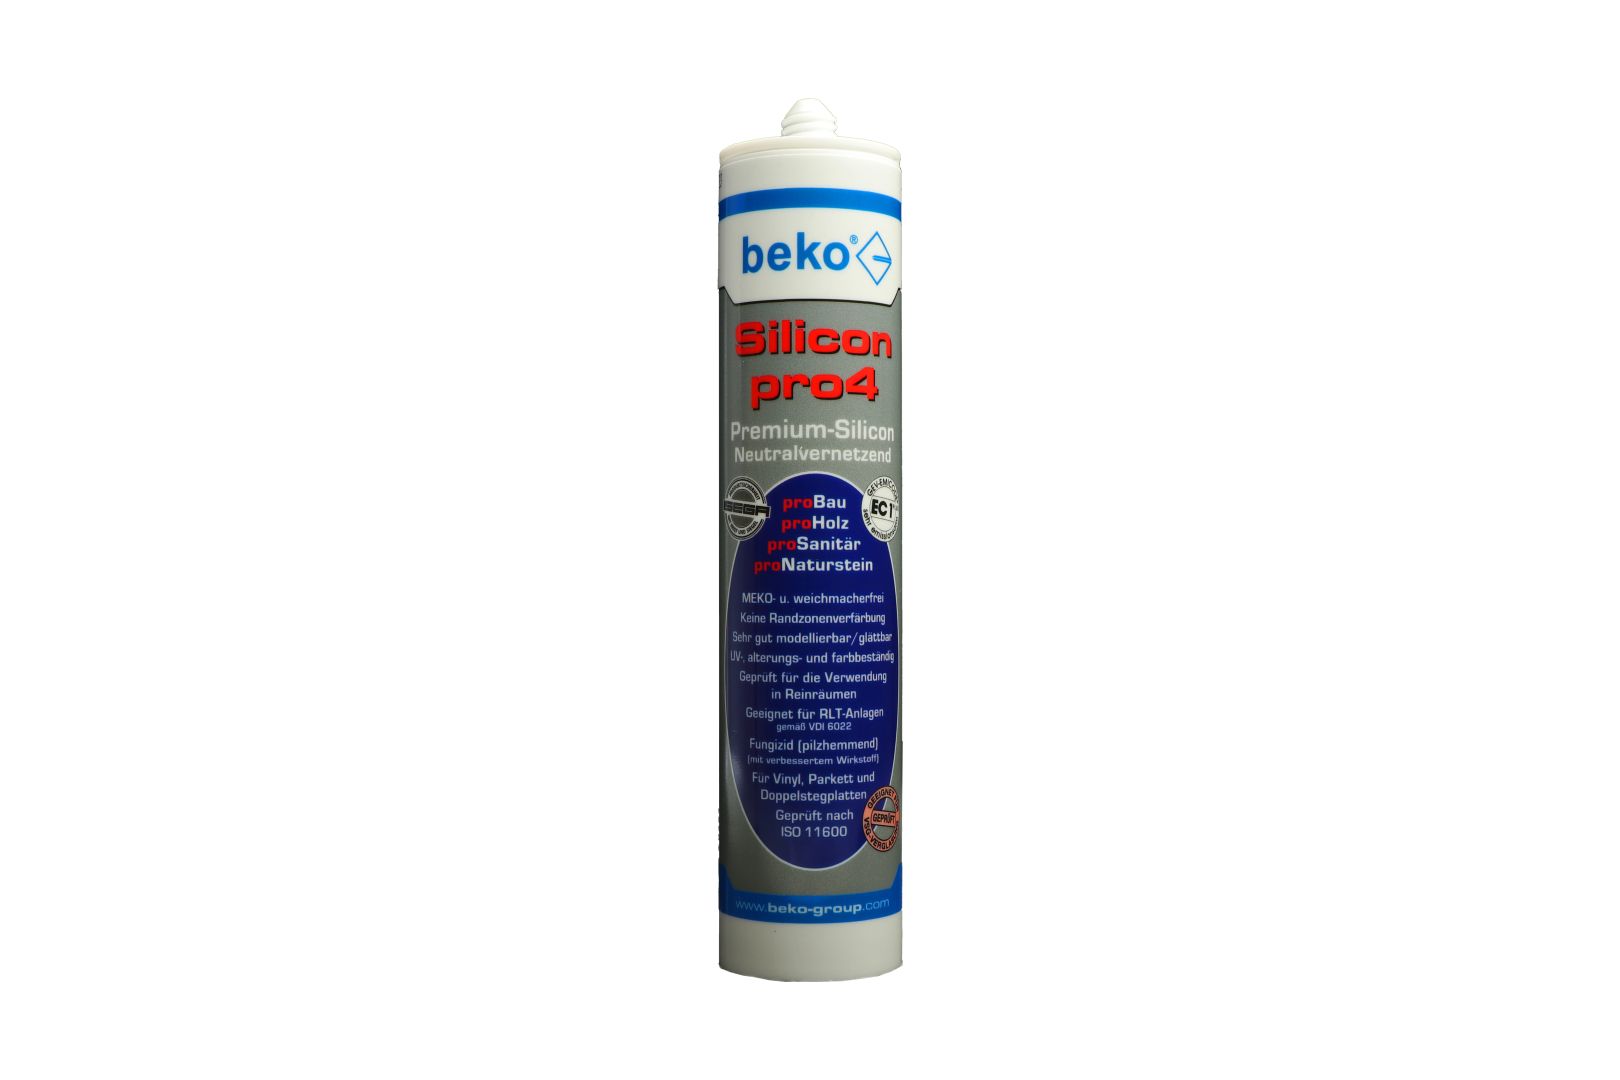 beko Silicon pro4, Premium-Silicon, Silikon-Dichtstoff, neutralvernetzend, beige/erle, 310 ml